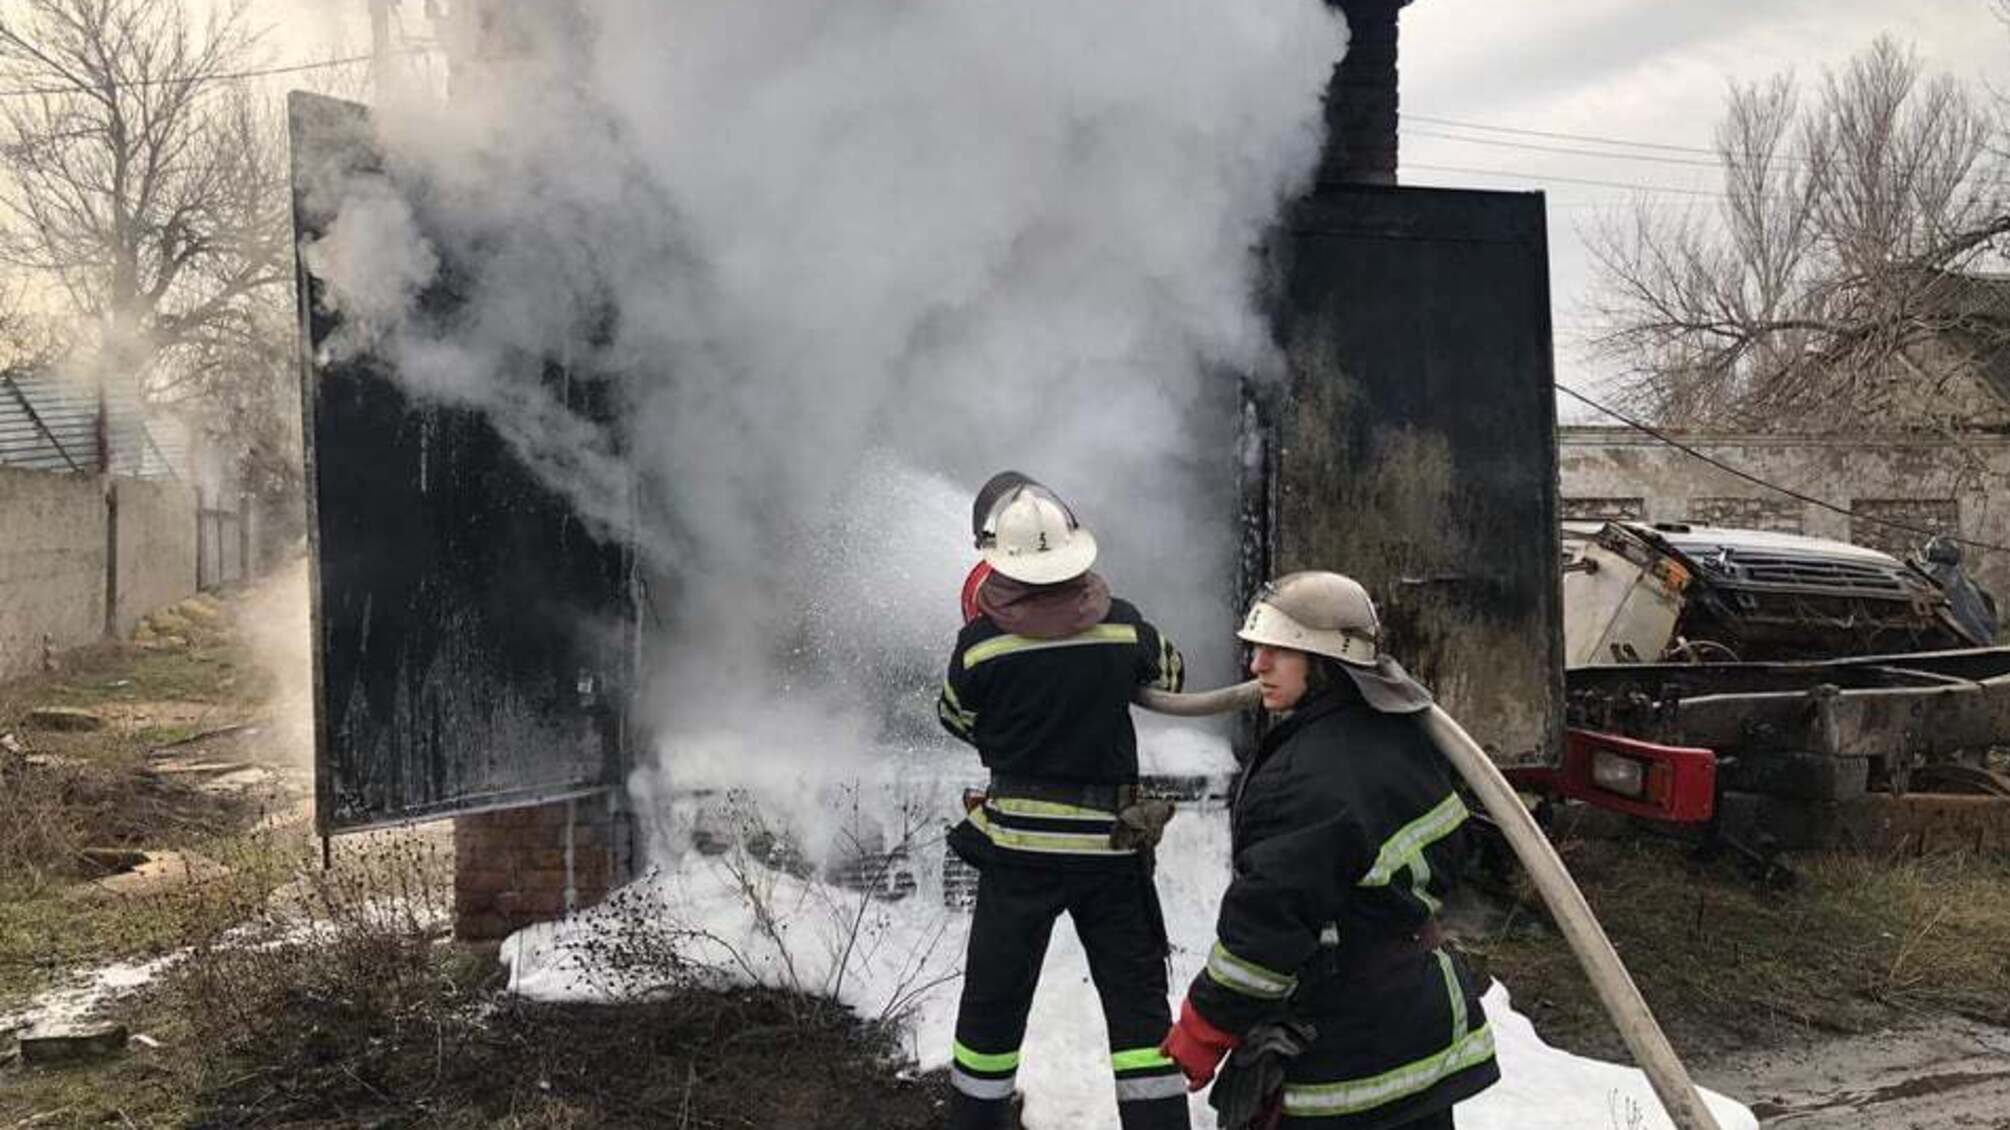 Миколаївська область: вогнеборці ліквідували пожежу в трансформаторній підстанції